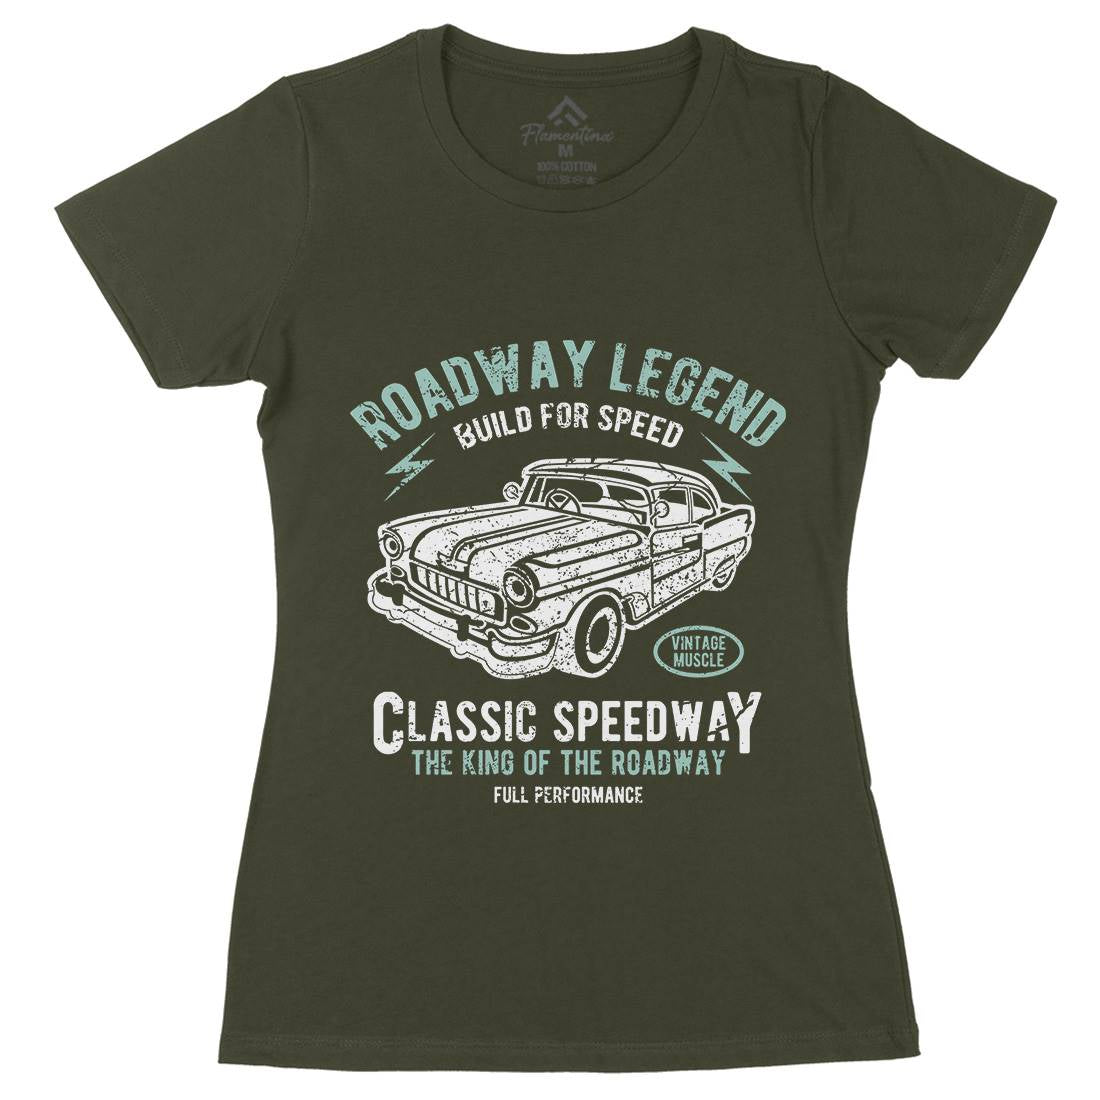 Roadway Legend Womens Organic Crew Neck T-Shirt Cars A124